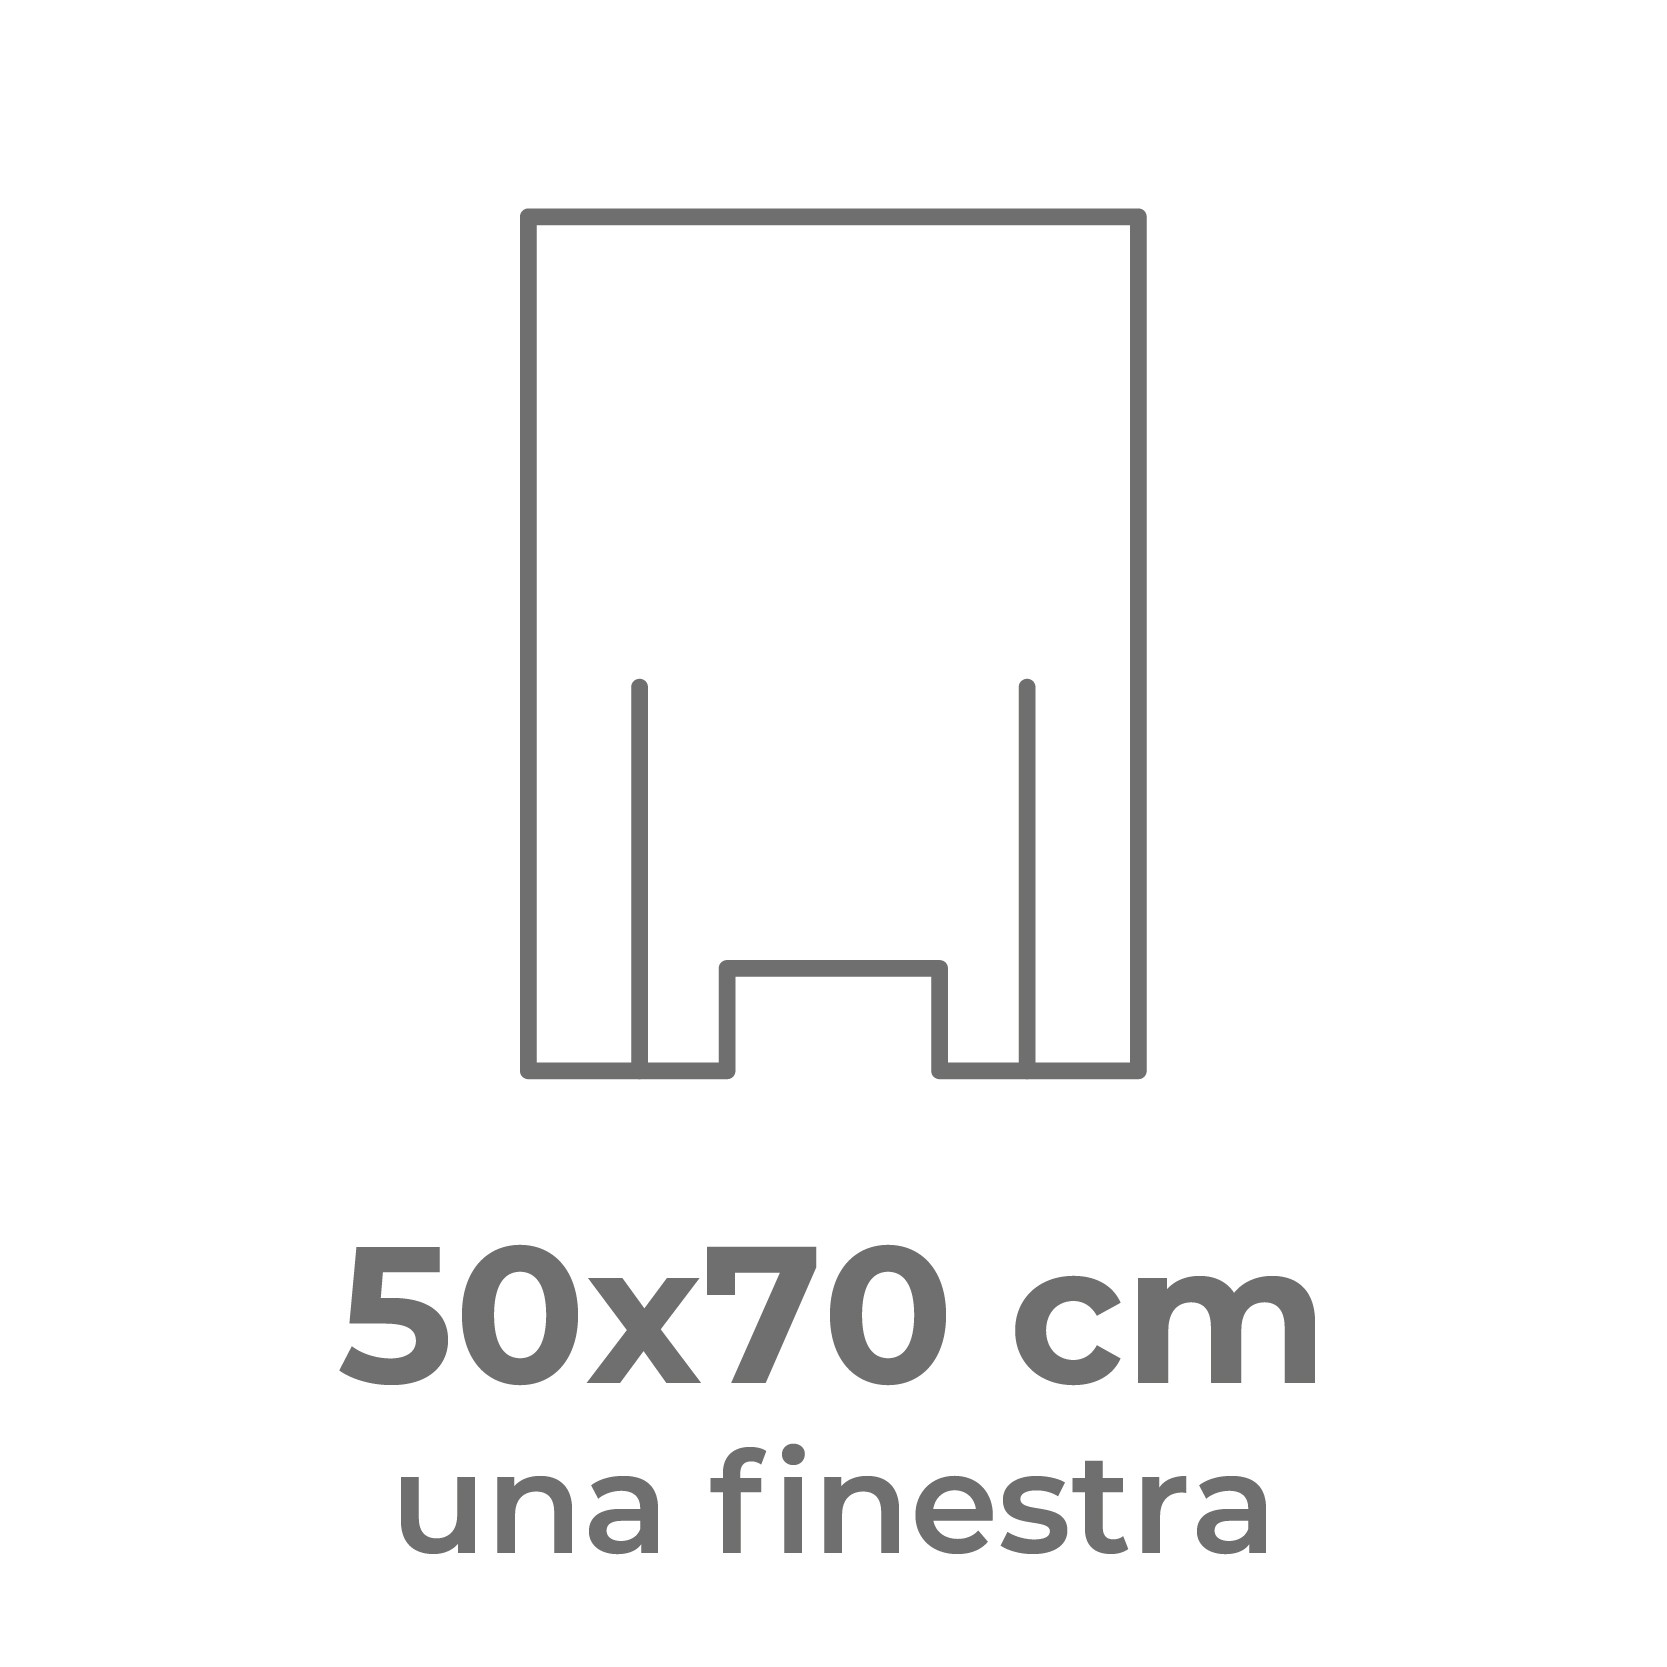 50x70 cm (una finestra)